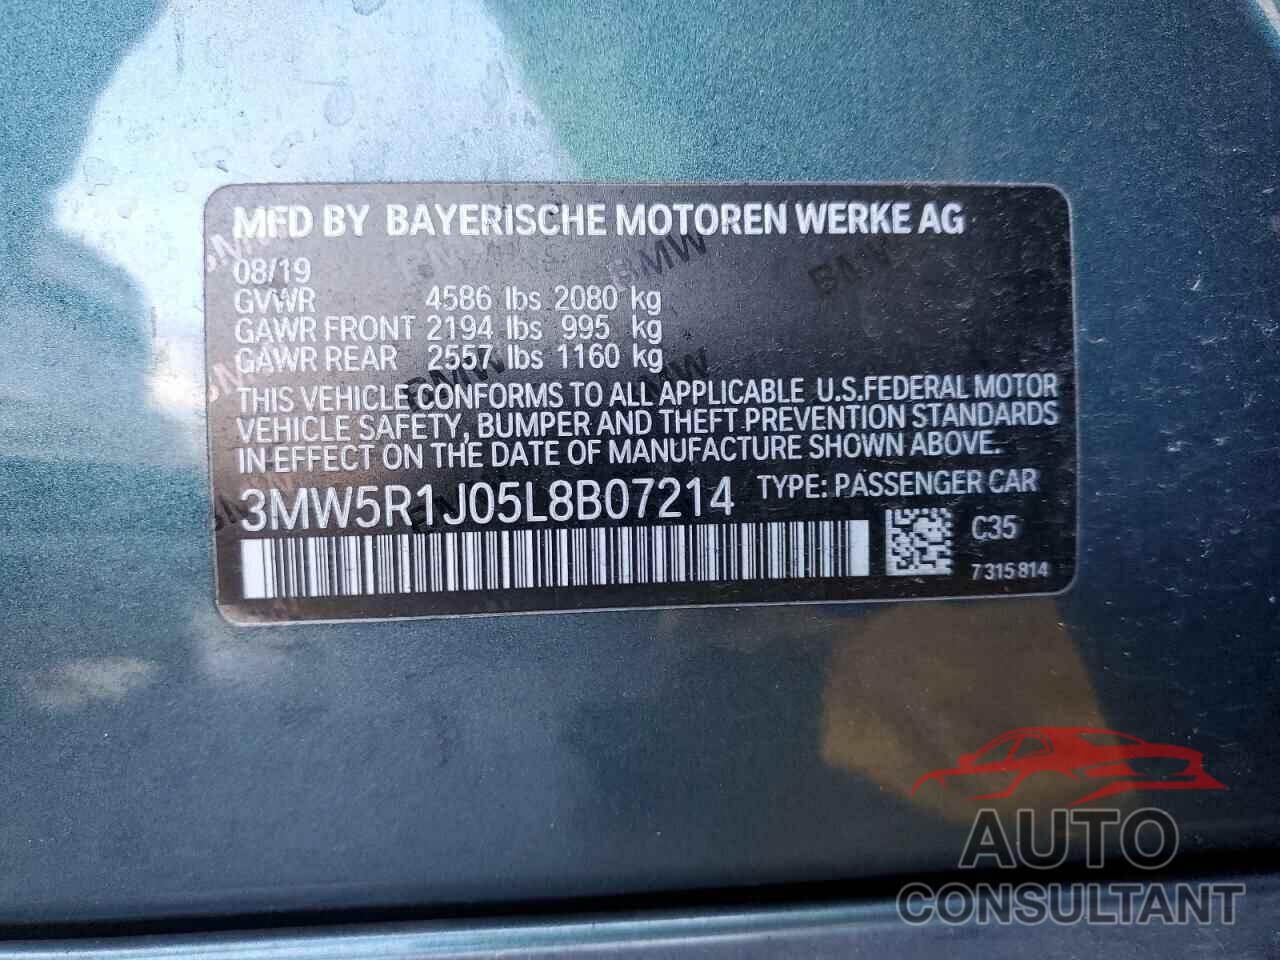 BMW 3 SERIES 2020 - 3MW5R1J05L8B07214